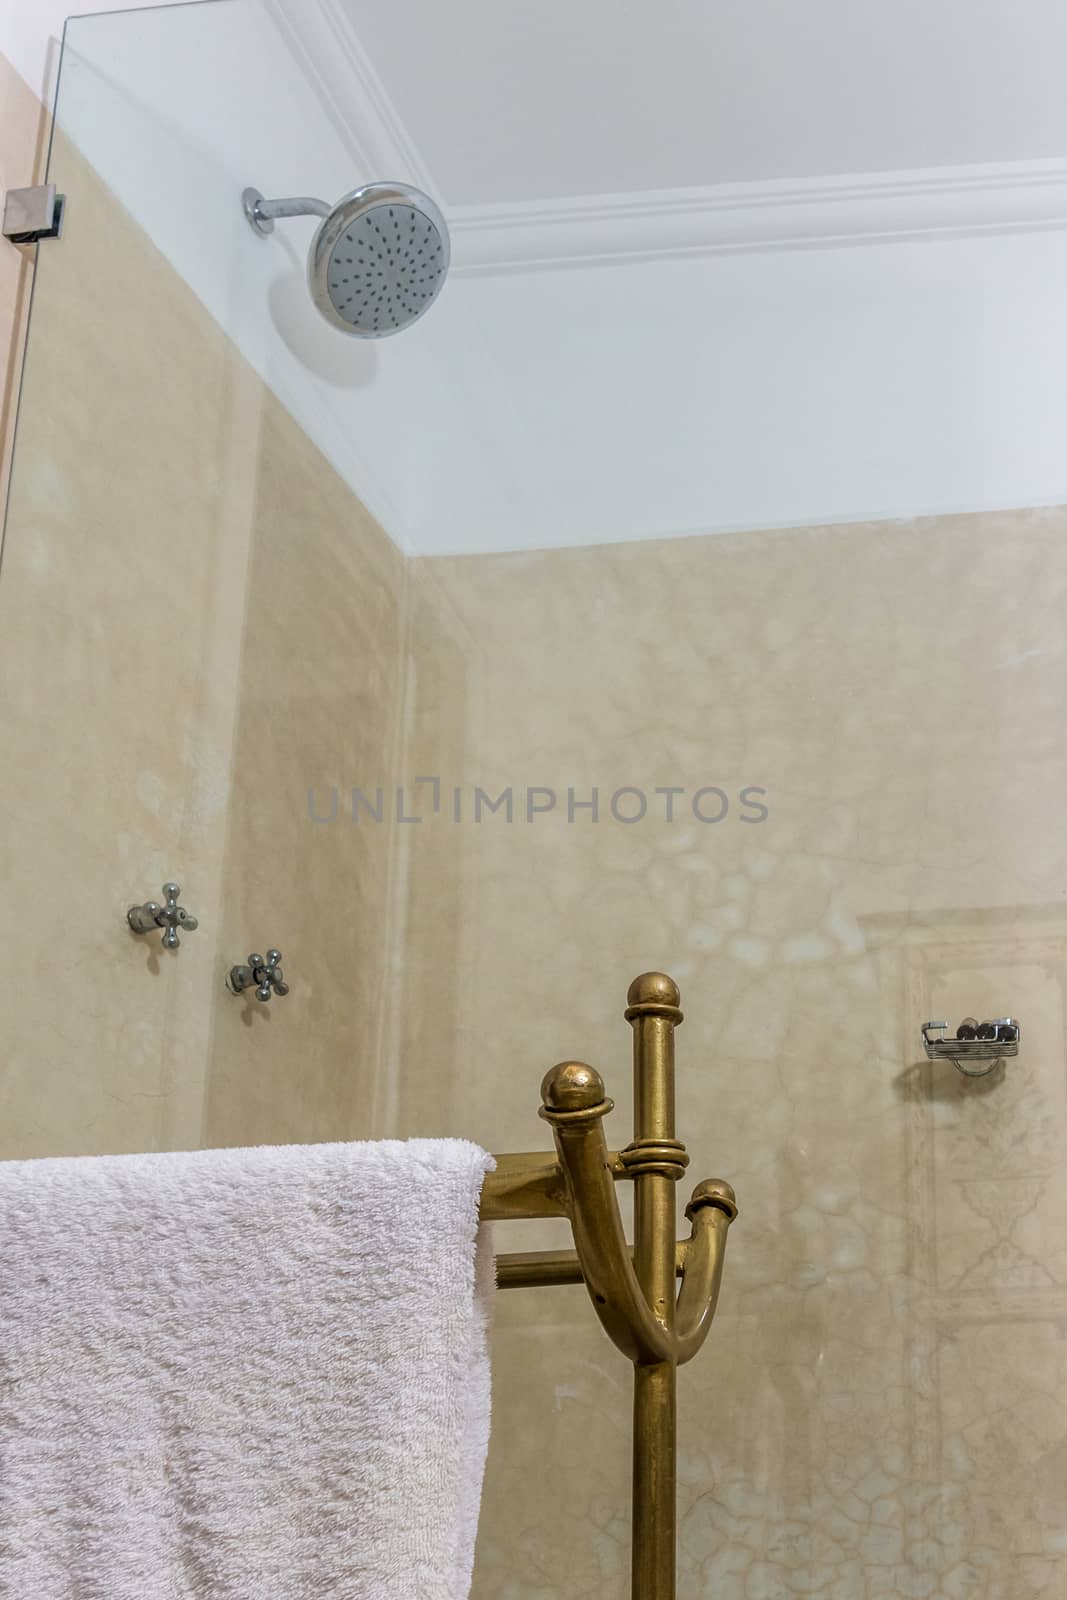 Glazed shower with towel holder